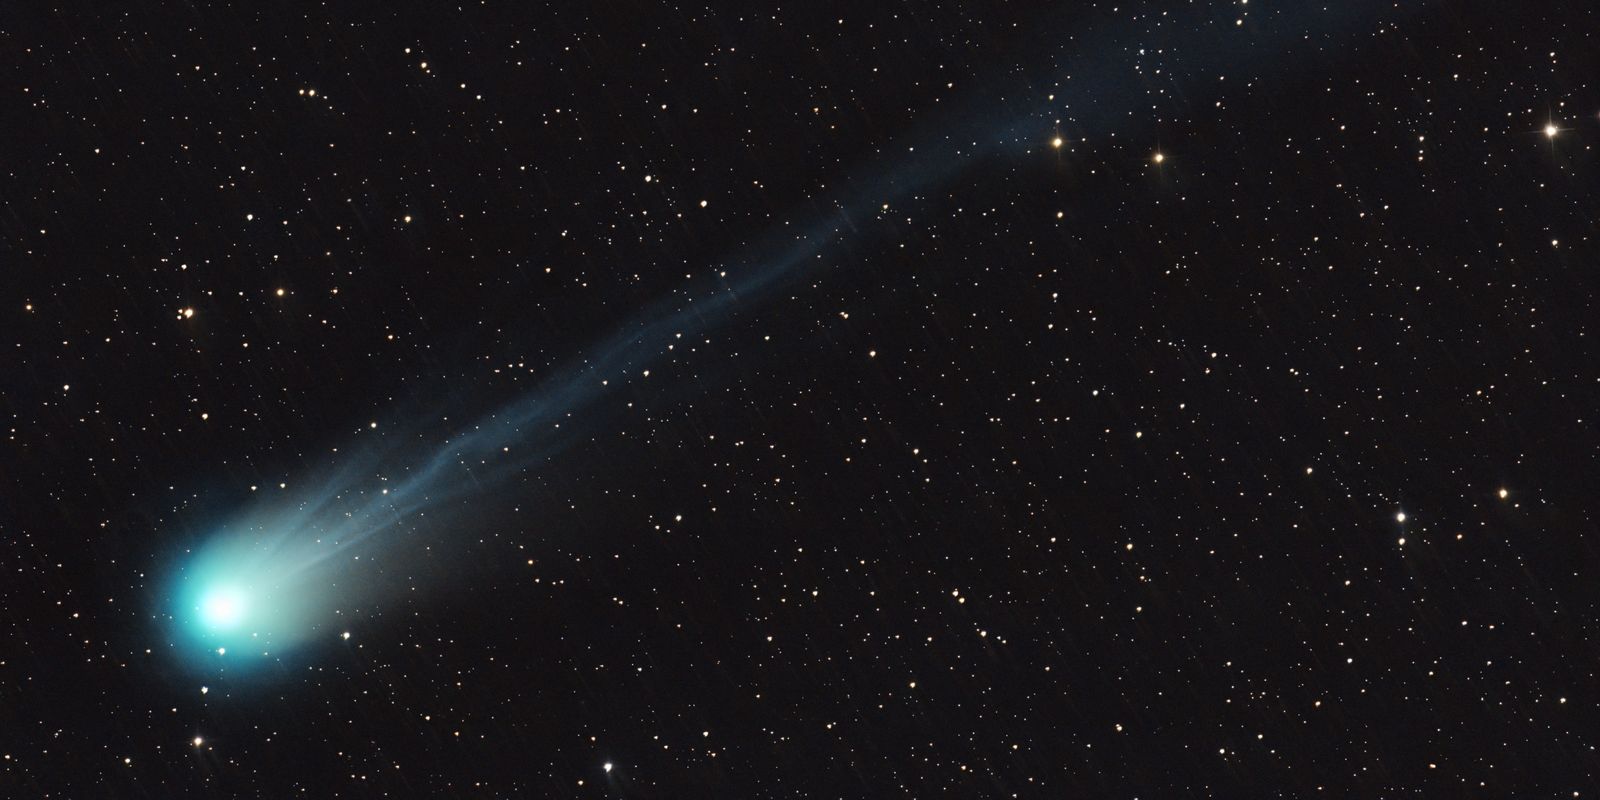 komet passerar jorden – 71 år sedan senaste besöket